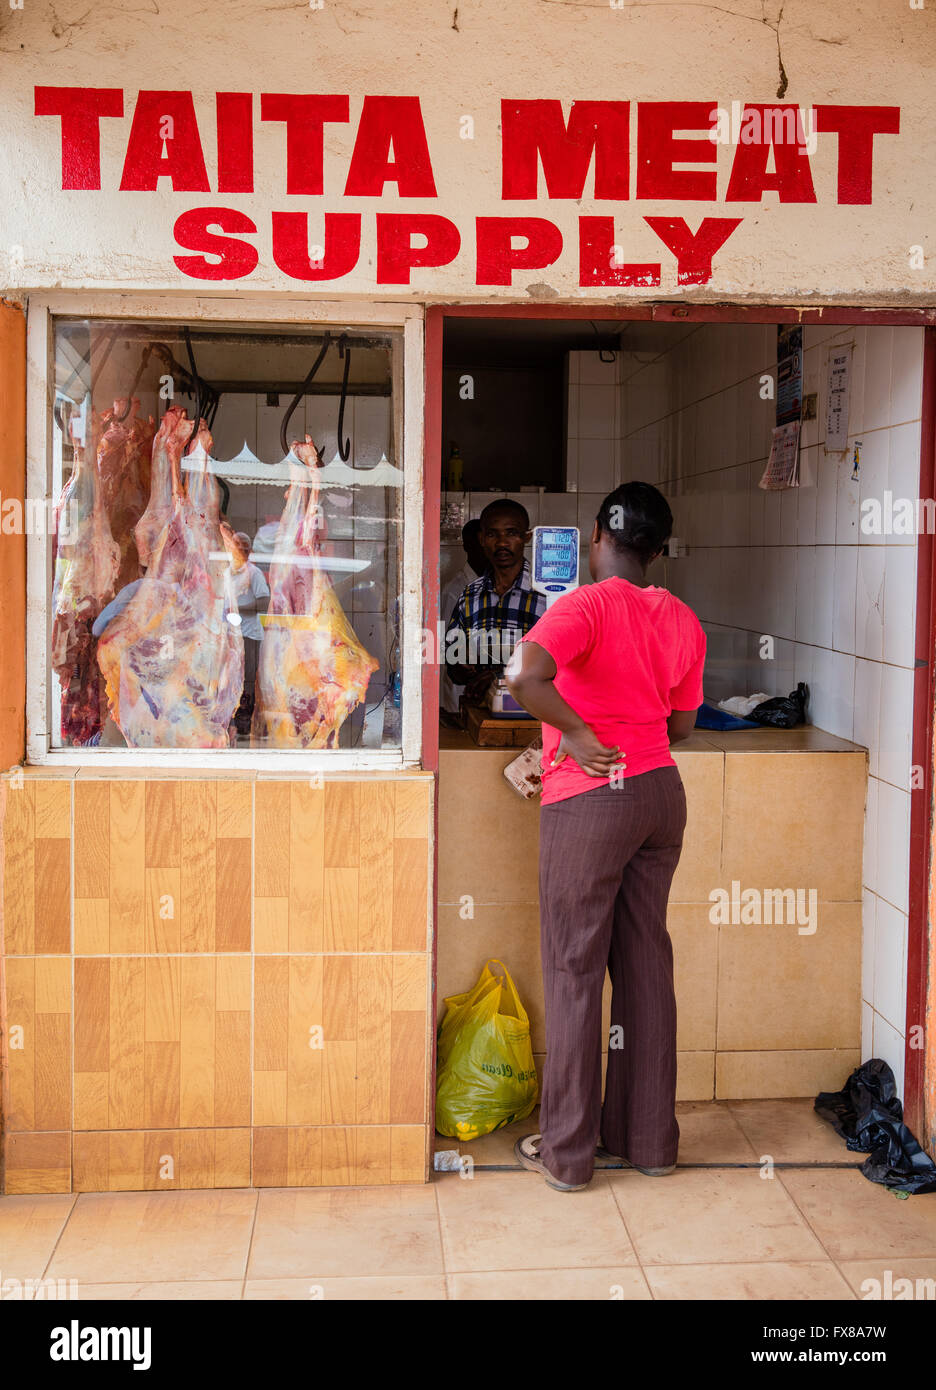 Boucherie typique de la ville de Voi dans la région de Taita du sud du Kenya avec les carcasses suspendues dans la fenêtre Banque D'Images